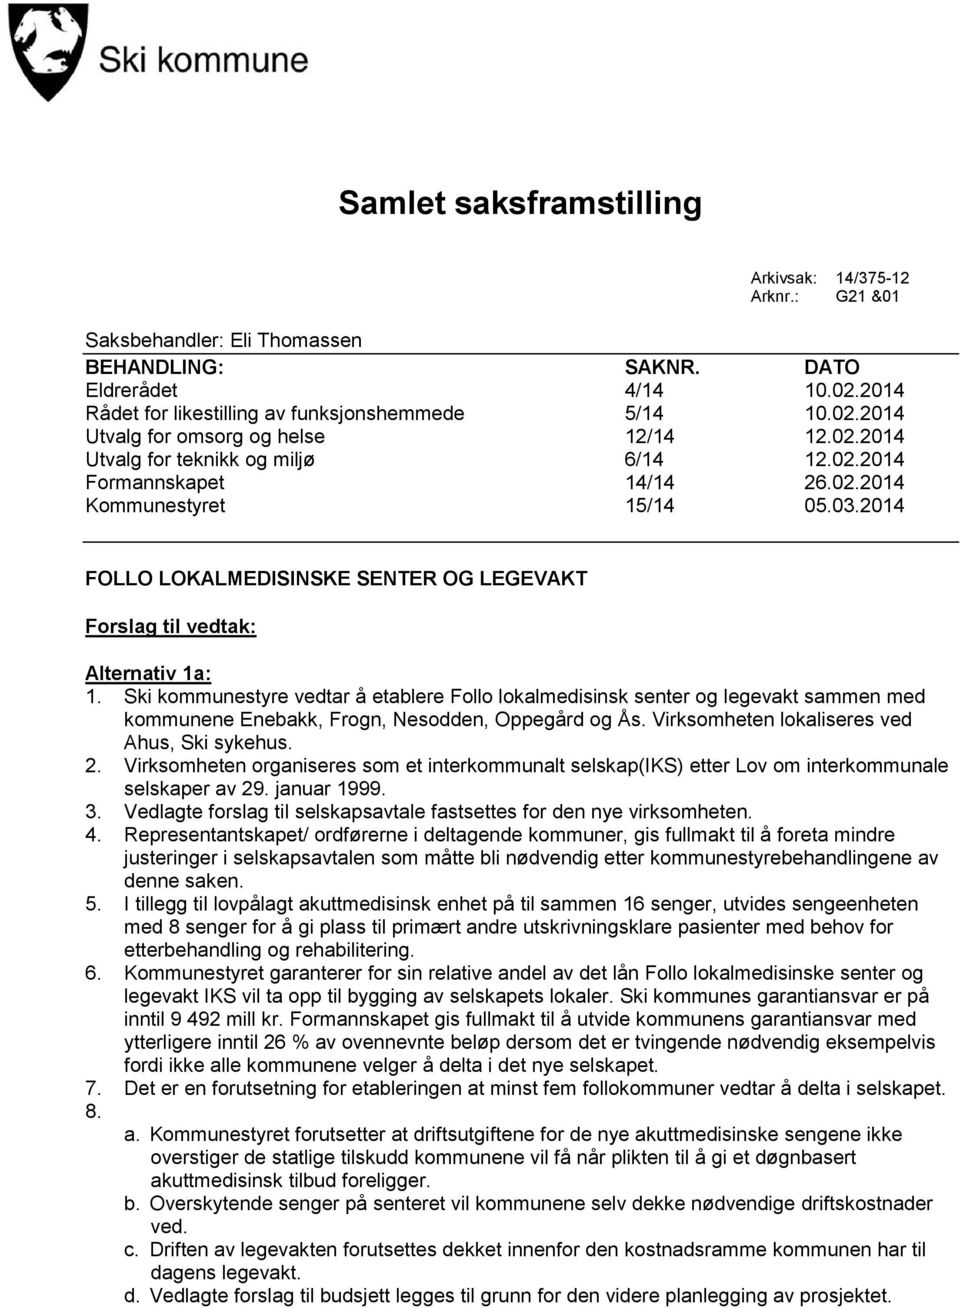 Ski kommunestyre vedtar å etablere Follo lokalmedisinsk senter og legevakt sammen med kommunene Enebakk, Frogn, Nesodden, Oppegård og Ås. Virksomheten lokaliseres ved Ahus, Ski sykehus. 2.